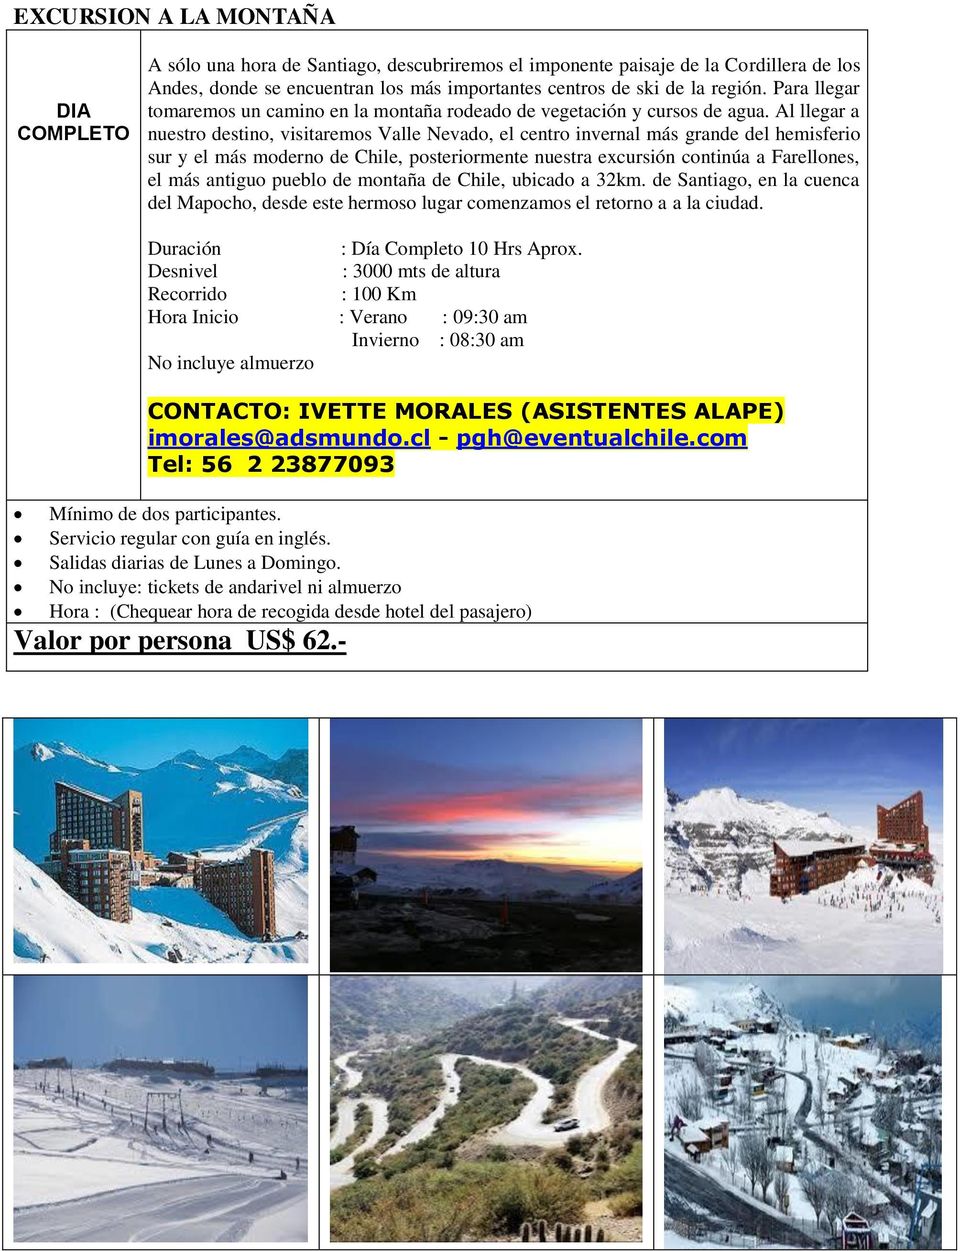 Al llegar a nuestro destino, visitaremos Valle Nevado, el centro invernal más grande del hemisferio sur y el más moderno de Chile, posteriormente nuestra excursión continúa a Farellones, el más